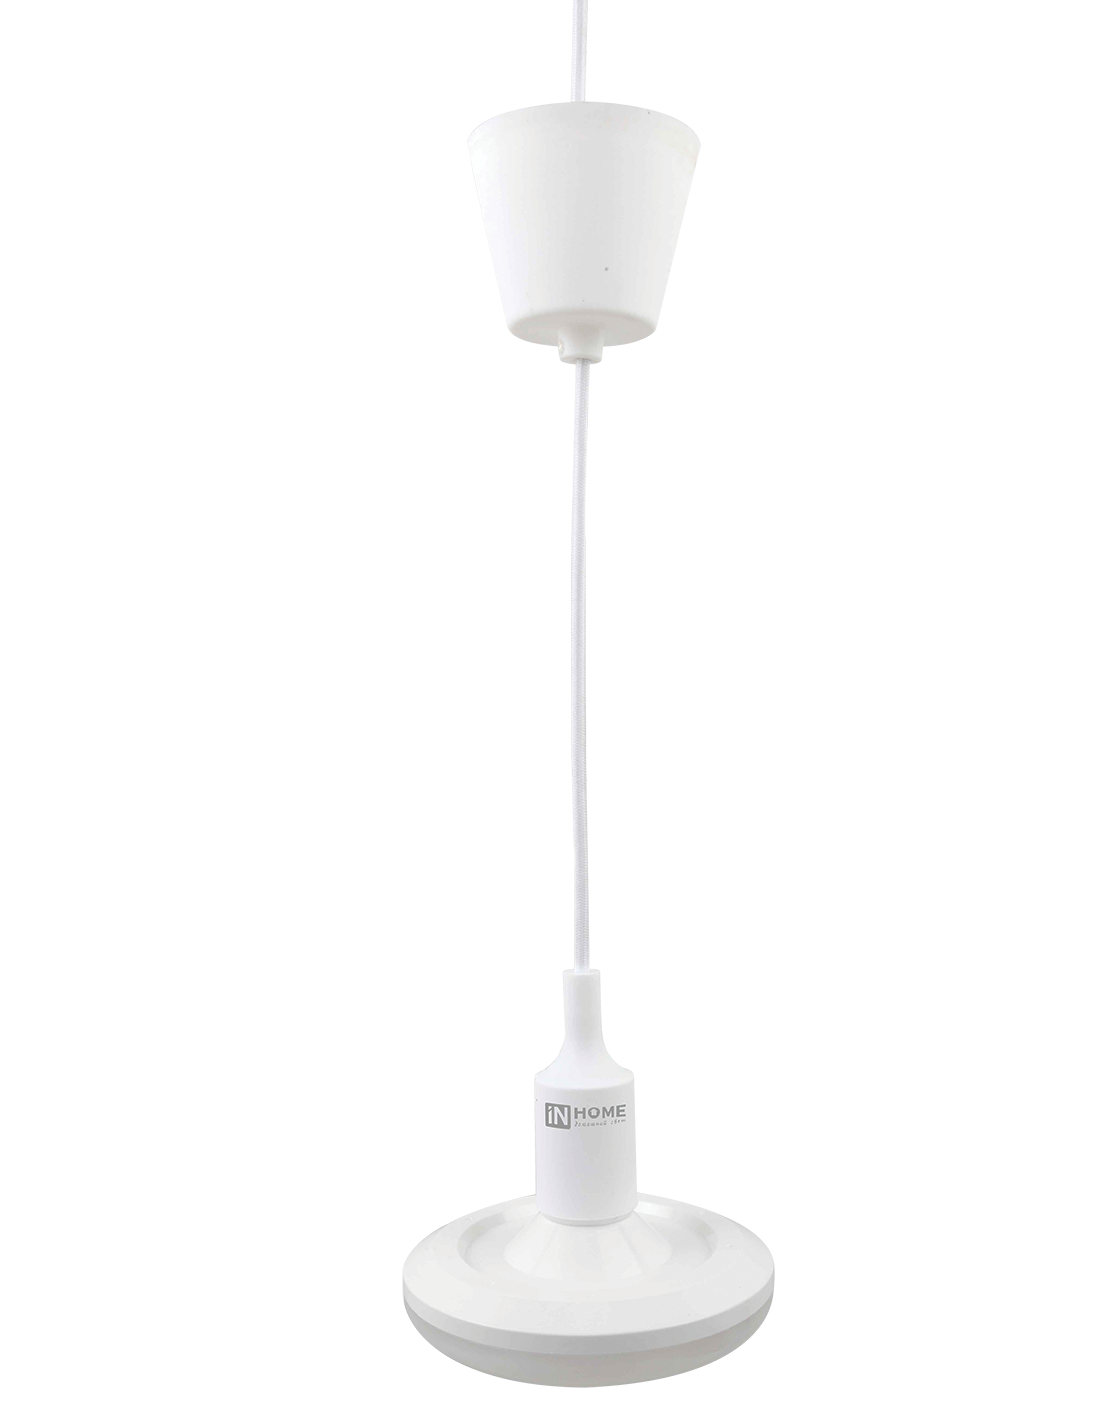 Купить лампа светодиодная led-ufo 25вт 230в 4000к 2250лм 200мм с силиконовым патроном е27 со шнуром 1м белым in home, 100% качество, в наличии на L-ed.ru